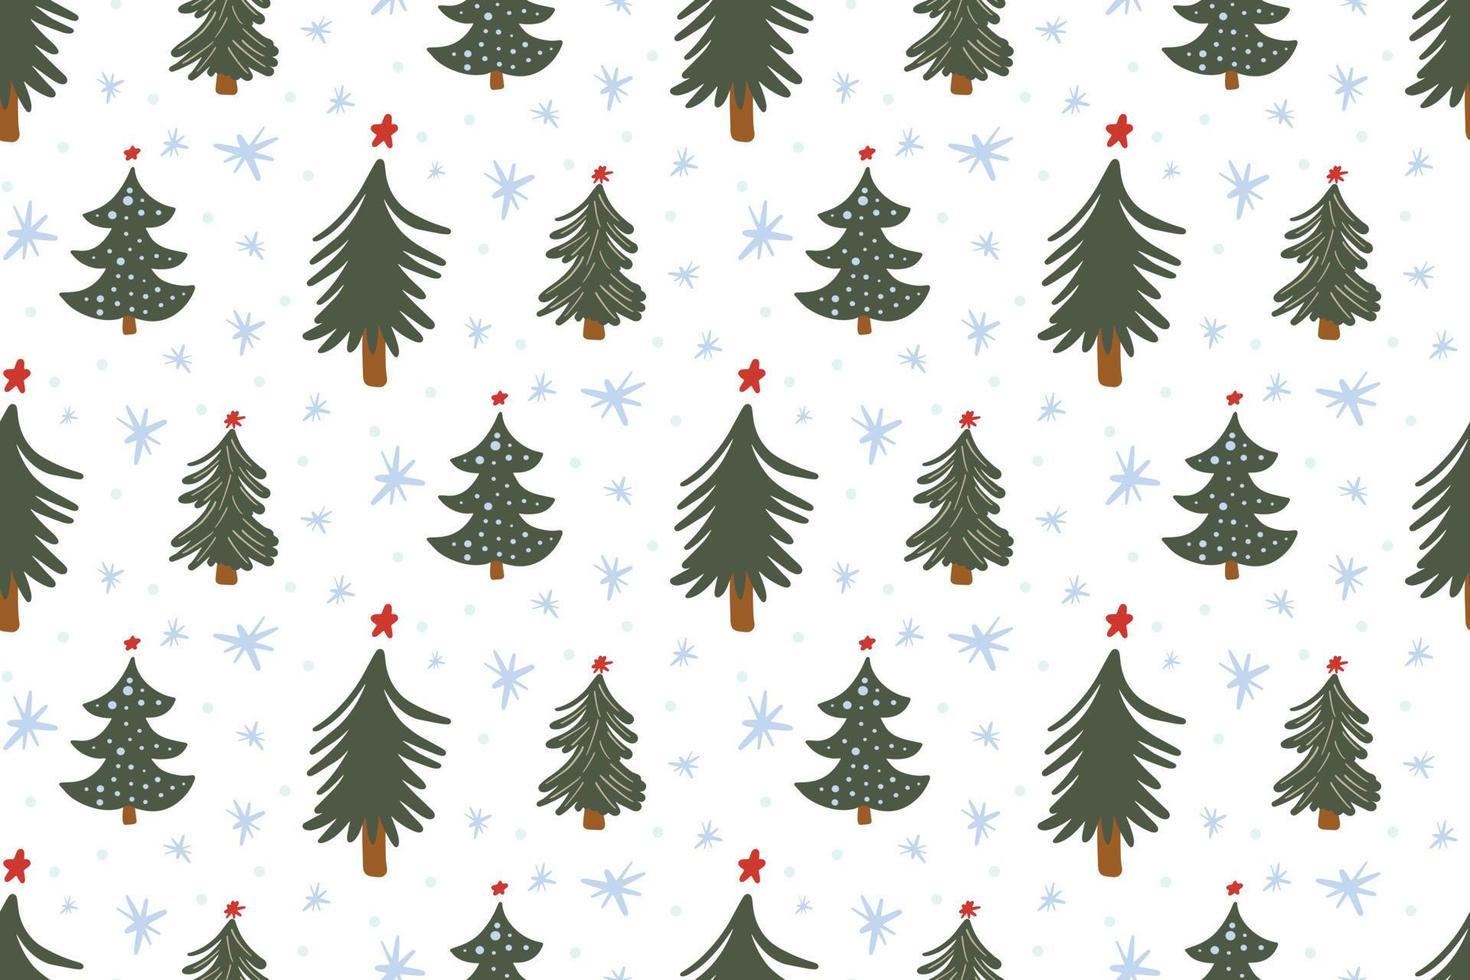 süßer winter nahtloser musterhintergrund mit einfachen kritzeleien des weihnachtsbaums und schneeflocken im kindlichen handgezeichneten stil. saisonale Neujahrsfeiertage festliche Hintergrundtextur, Druck vektor